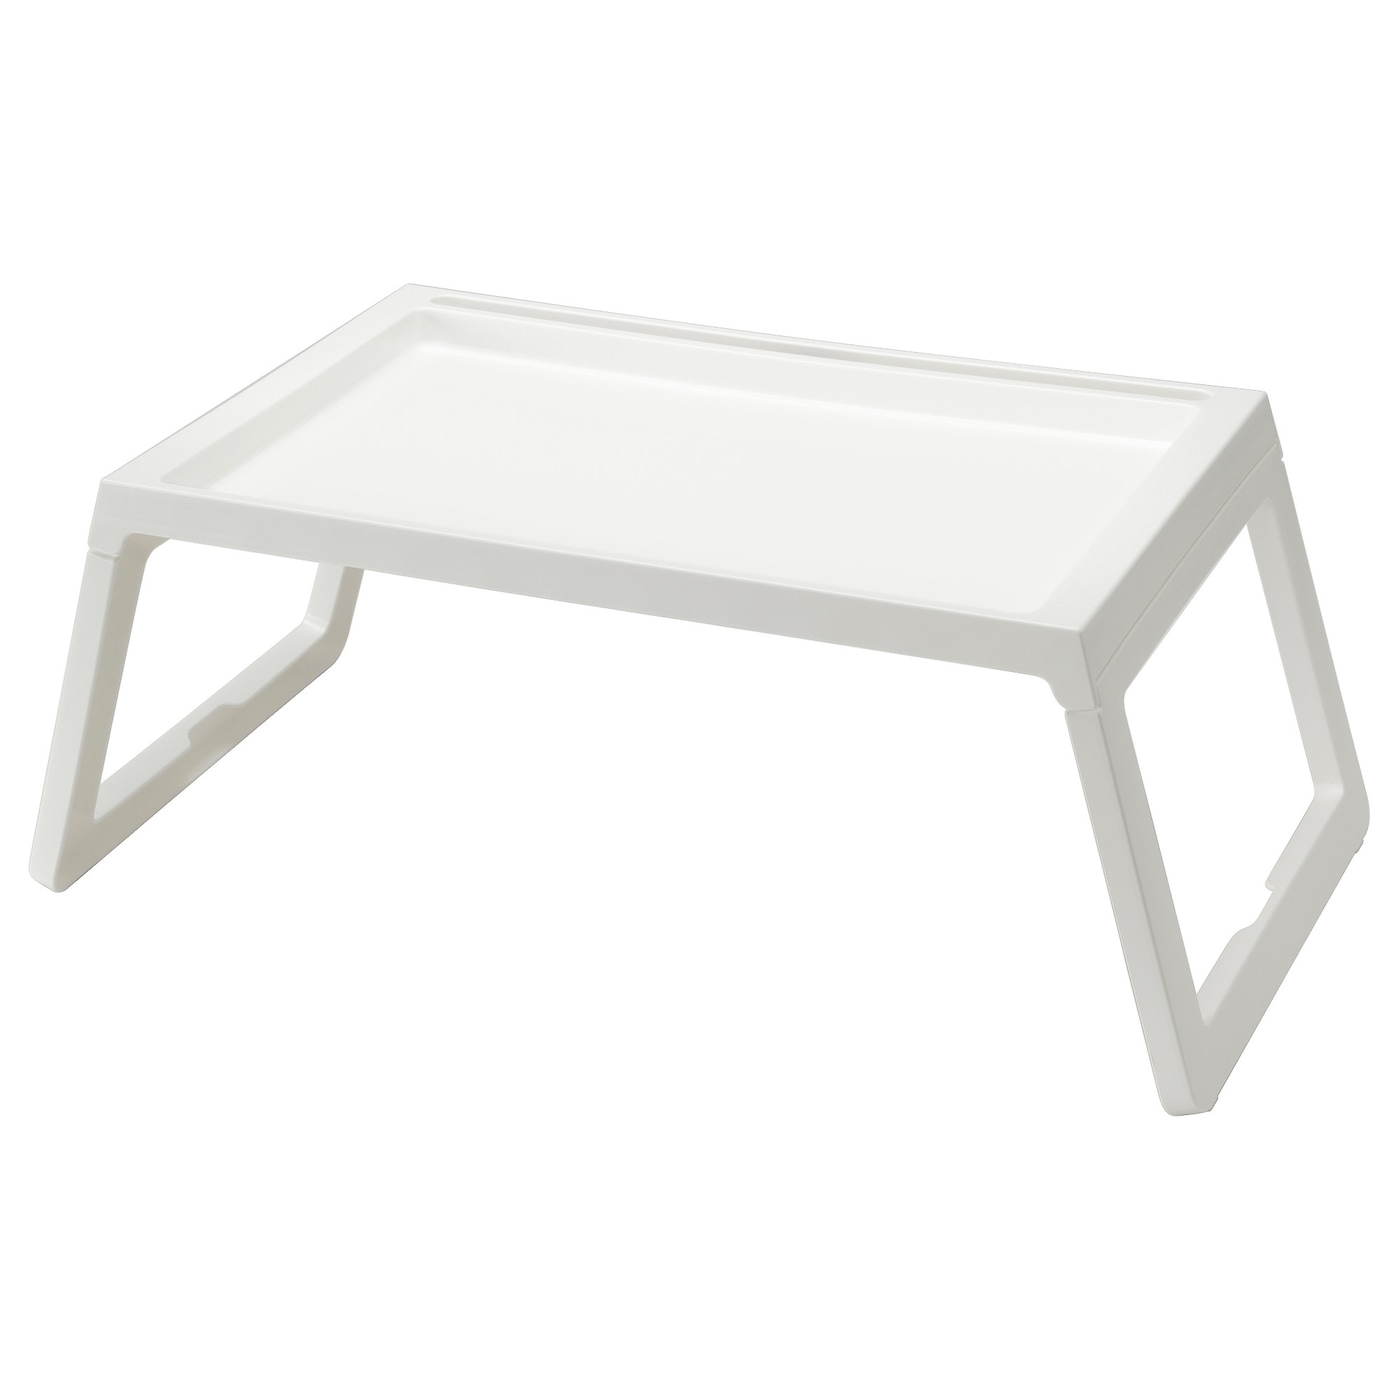 Поднос для кровати - KLIPSK IKEA/ КЛИПСК ИКЕА,  белый